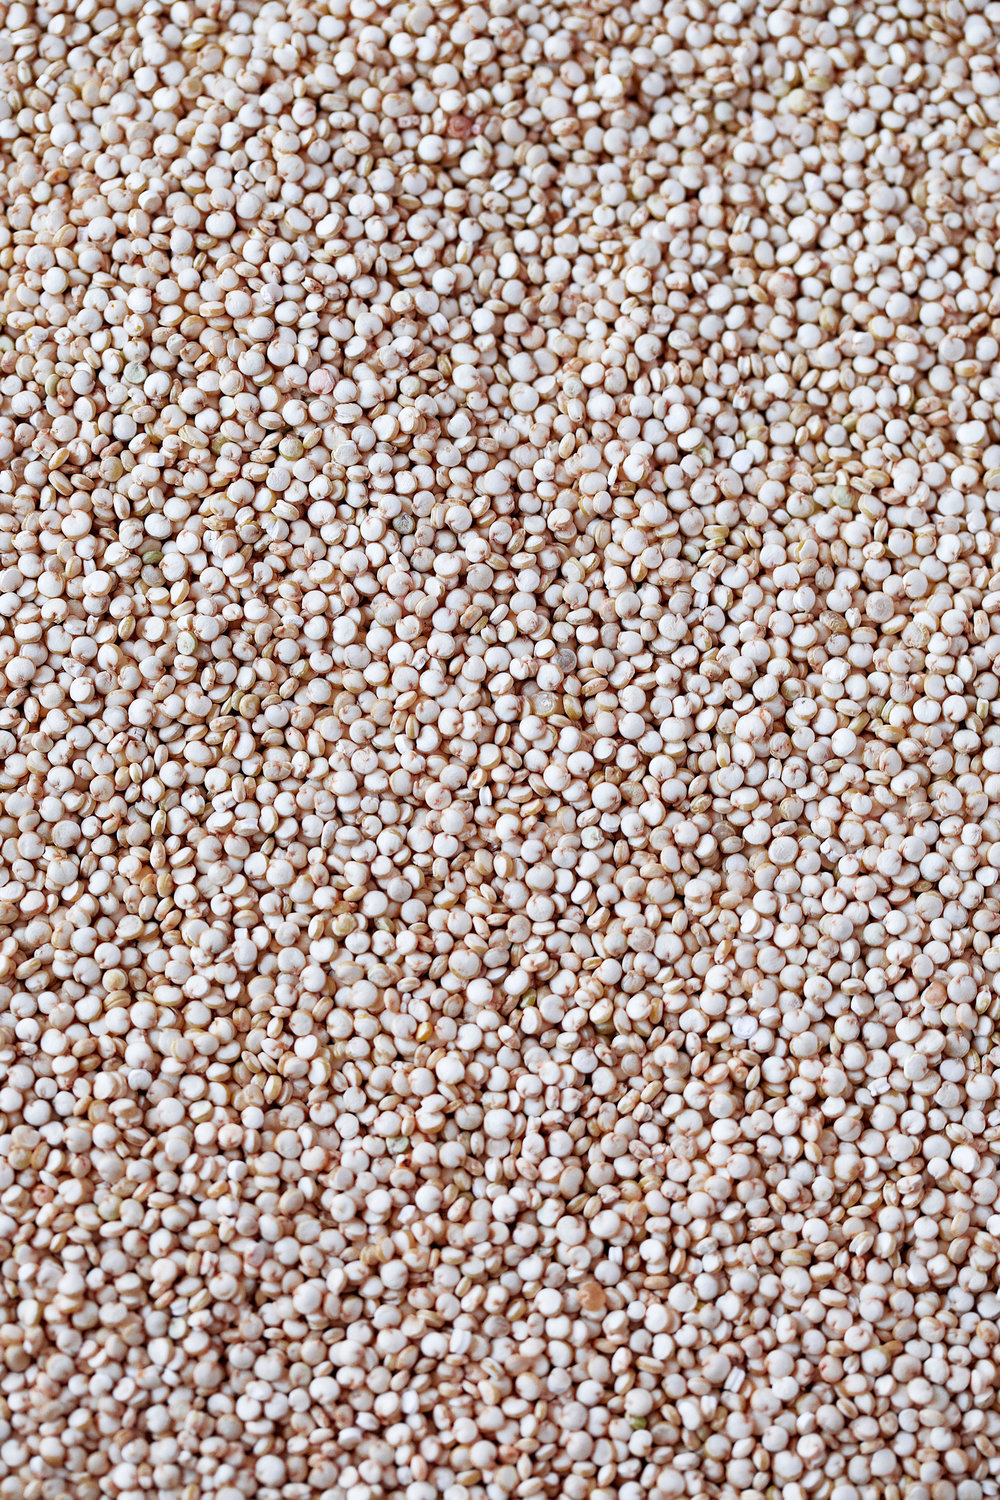 quinoa grains